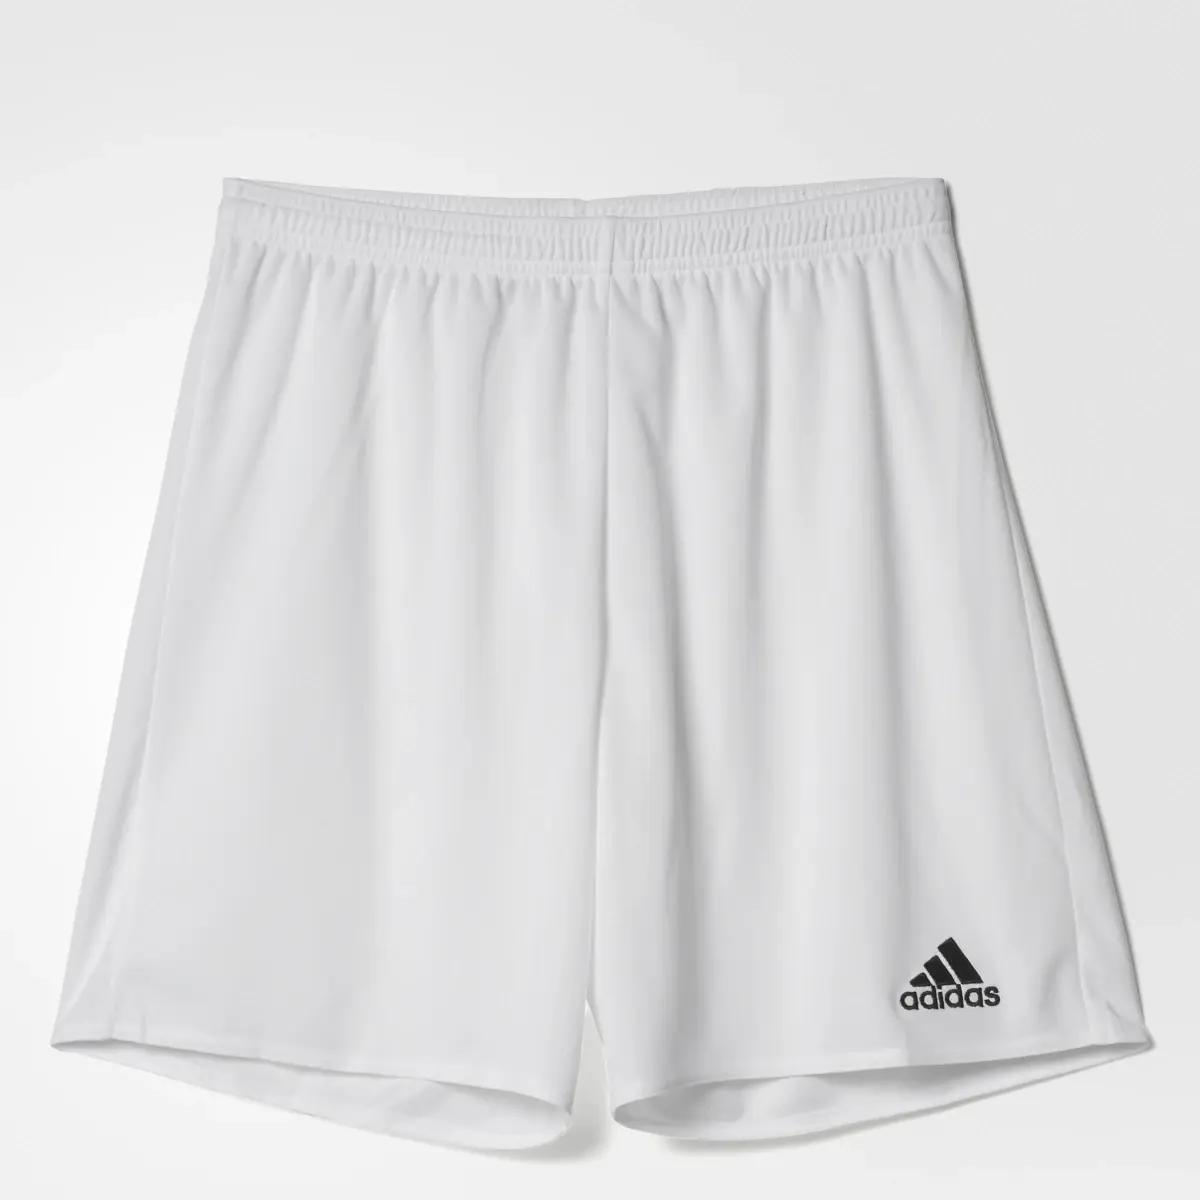 Adidas Parma 16 Shorts. 1